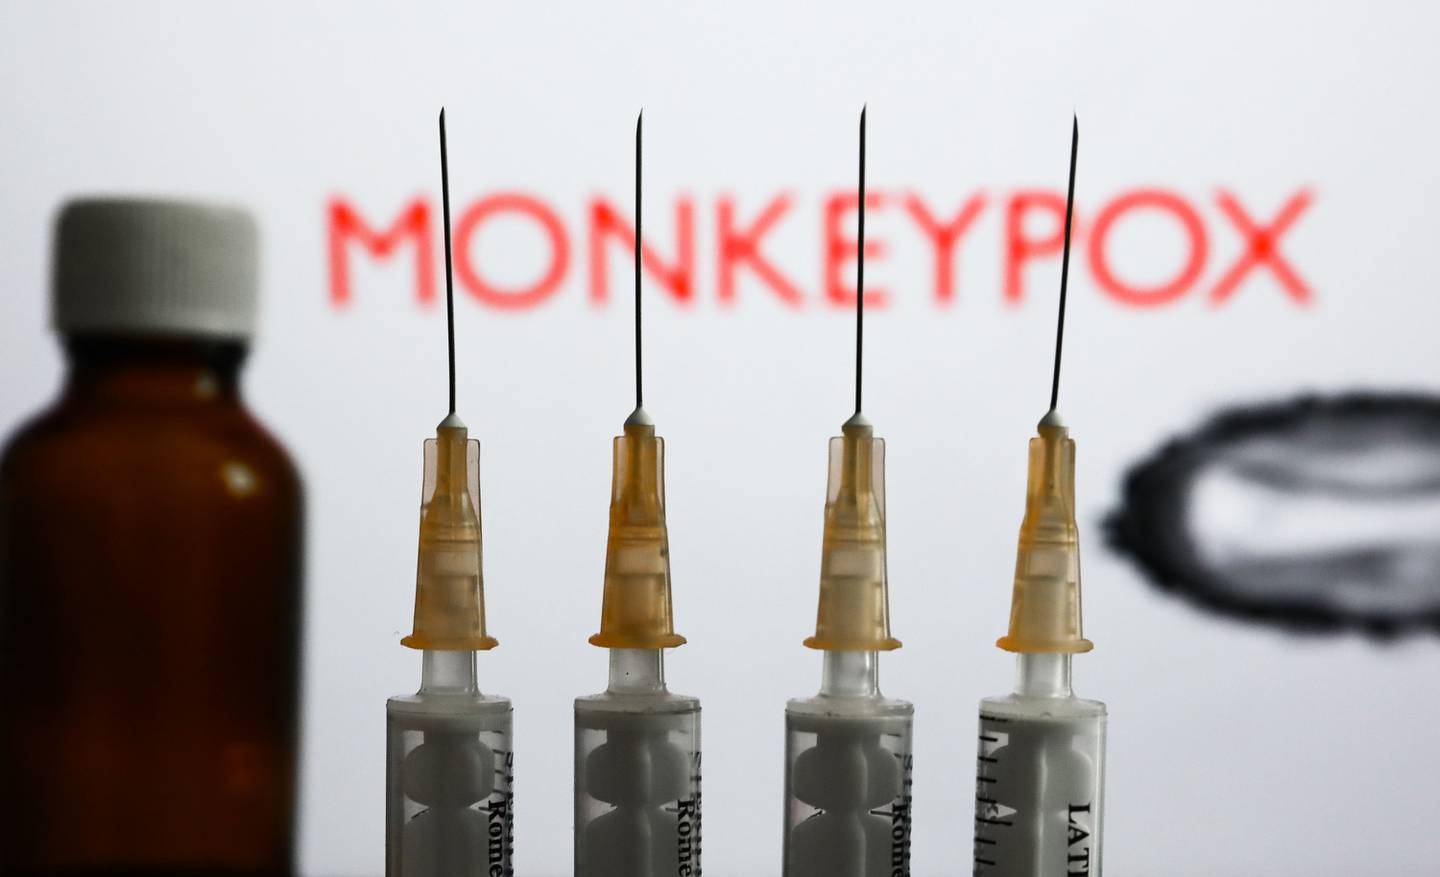 Se ven jeringuillas médicas y una botella con el letrero "Monkeypox". Fotógrafo: Jakub Pokrzycki